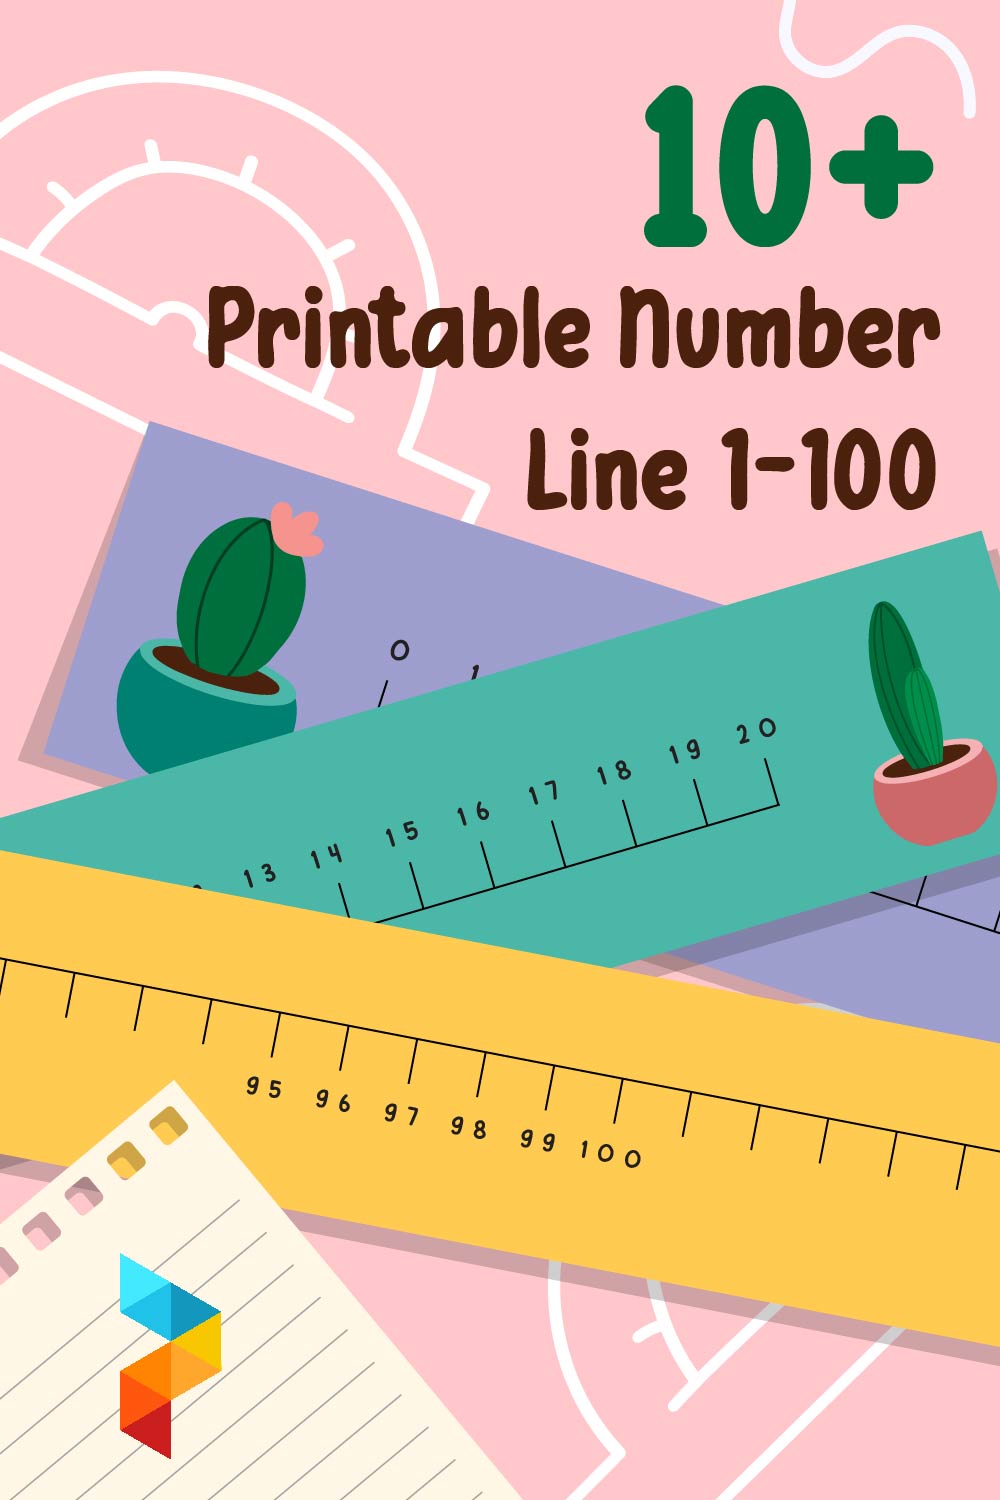 Printable Number Line 1-100